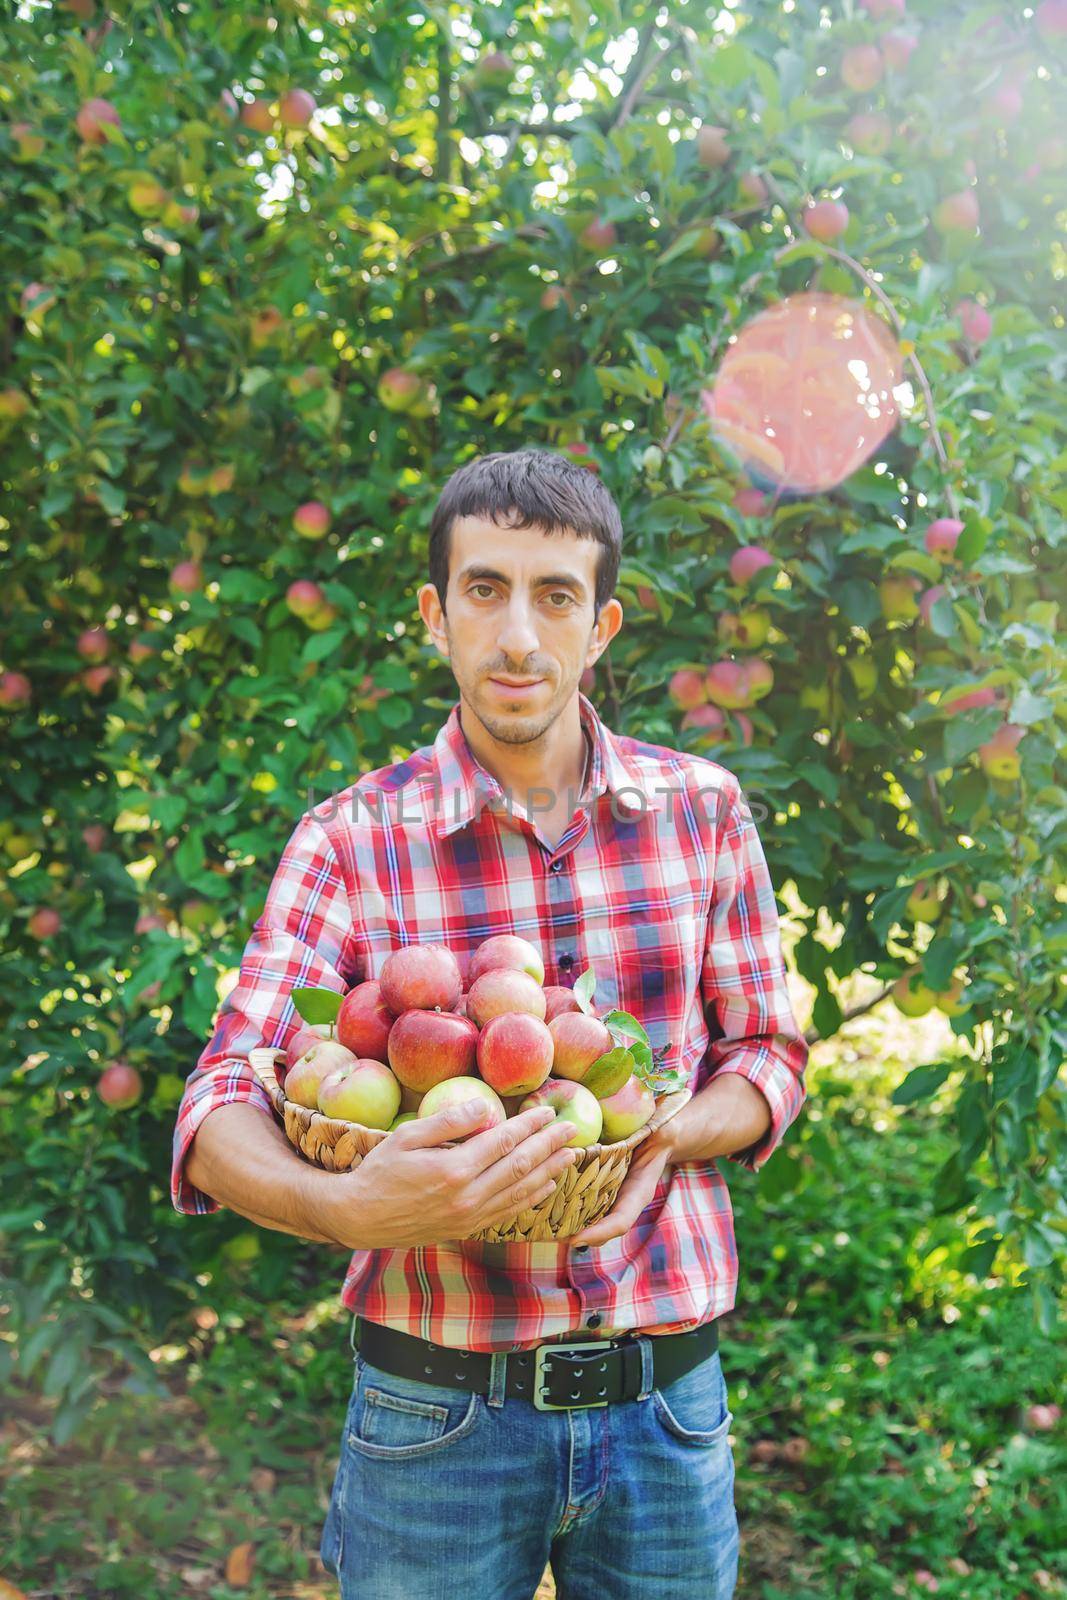 Man gardener picks apples in the garden in the garden. Selective focus.